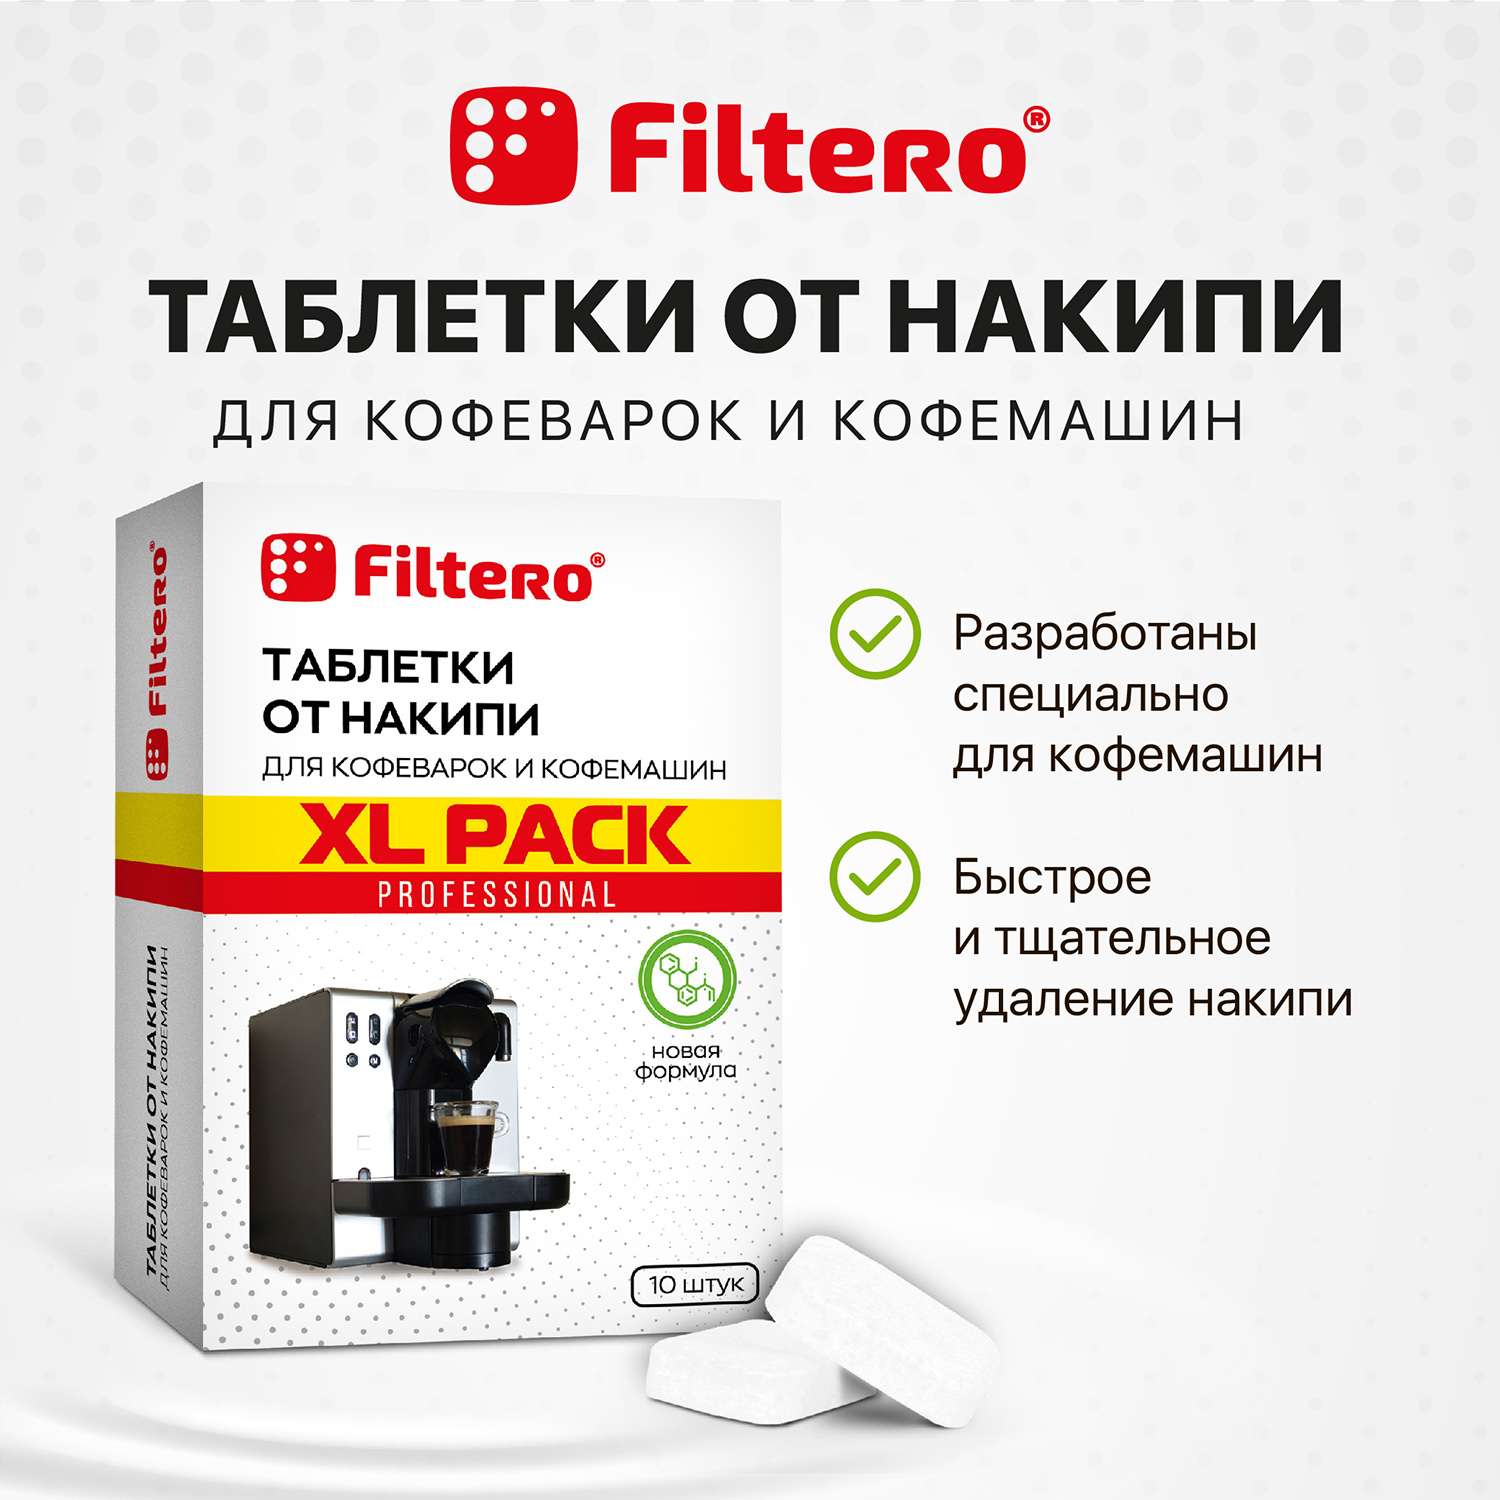 Таблетки Filtero от накипи для кофеварок и кофемашин 10 шт - фото 2